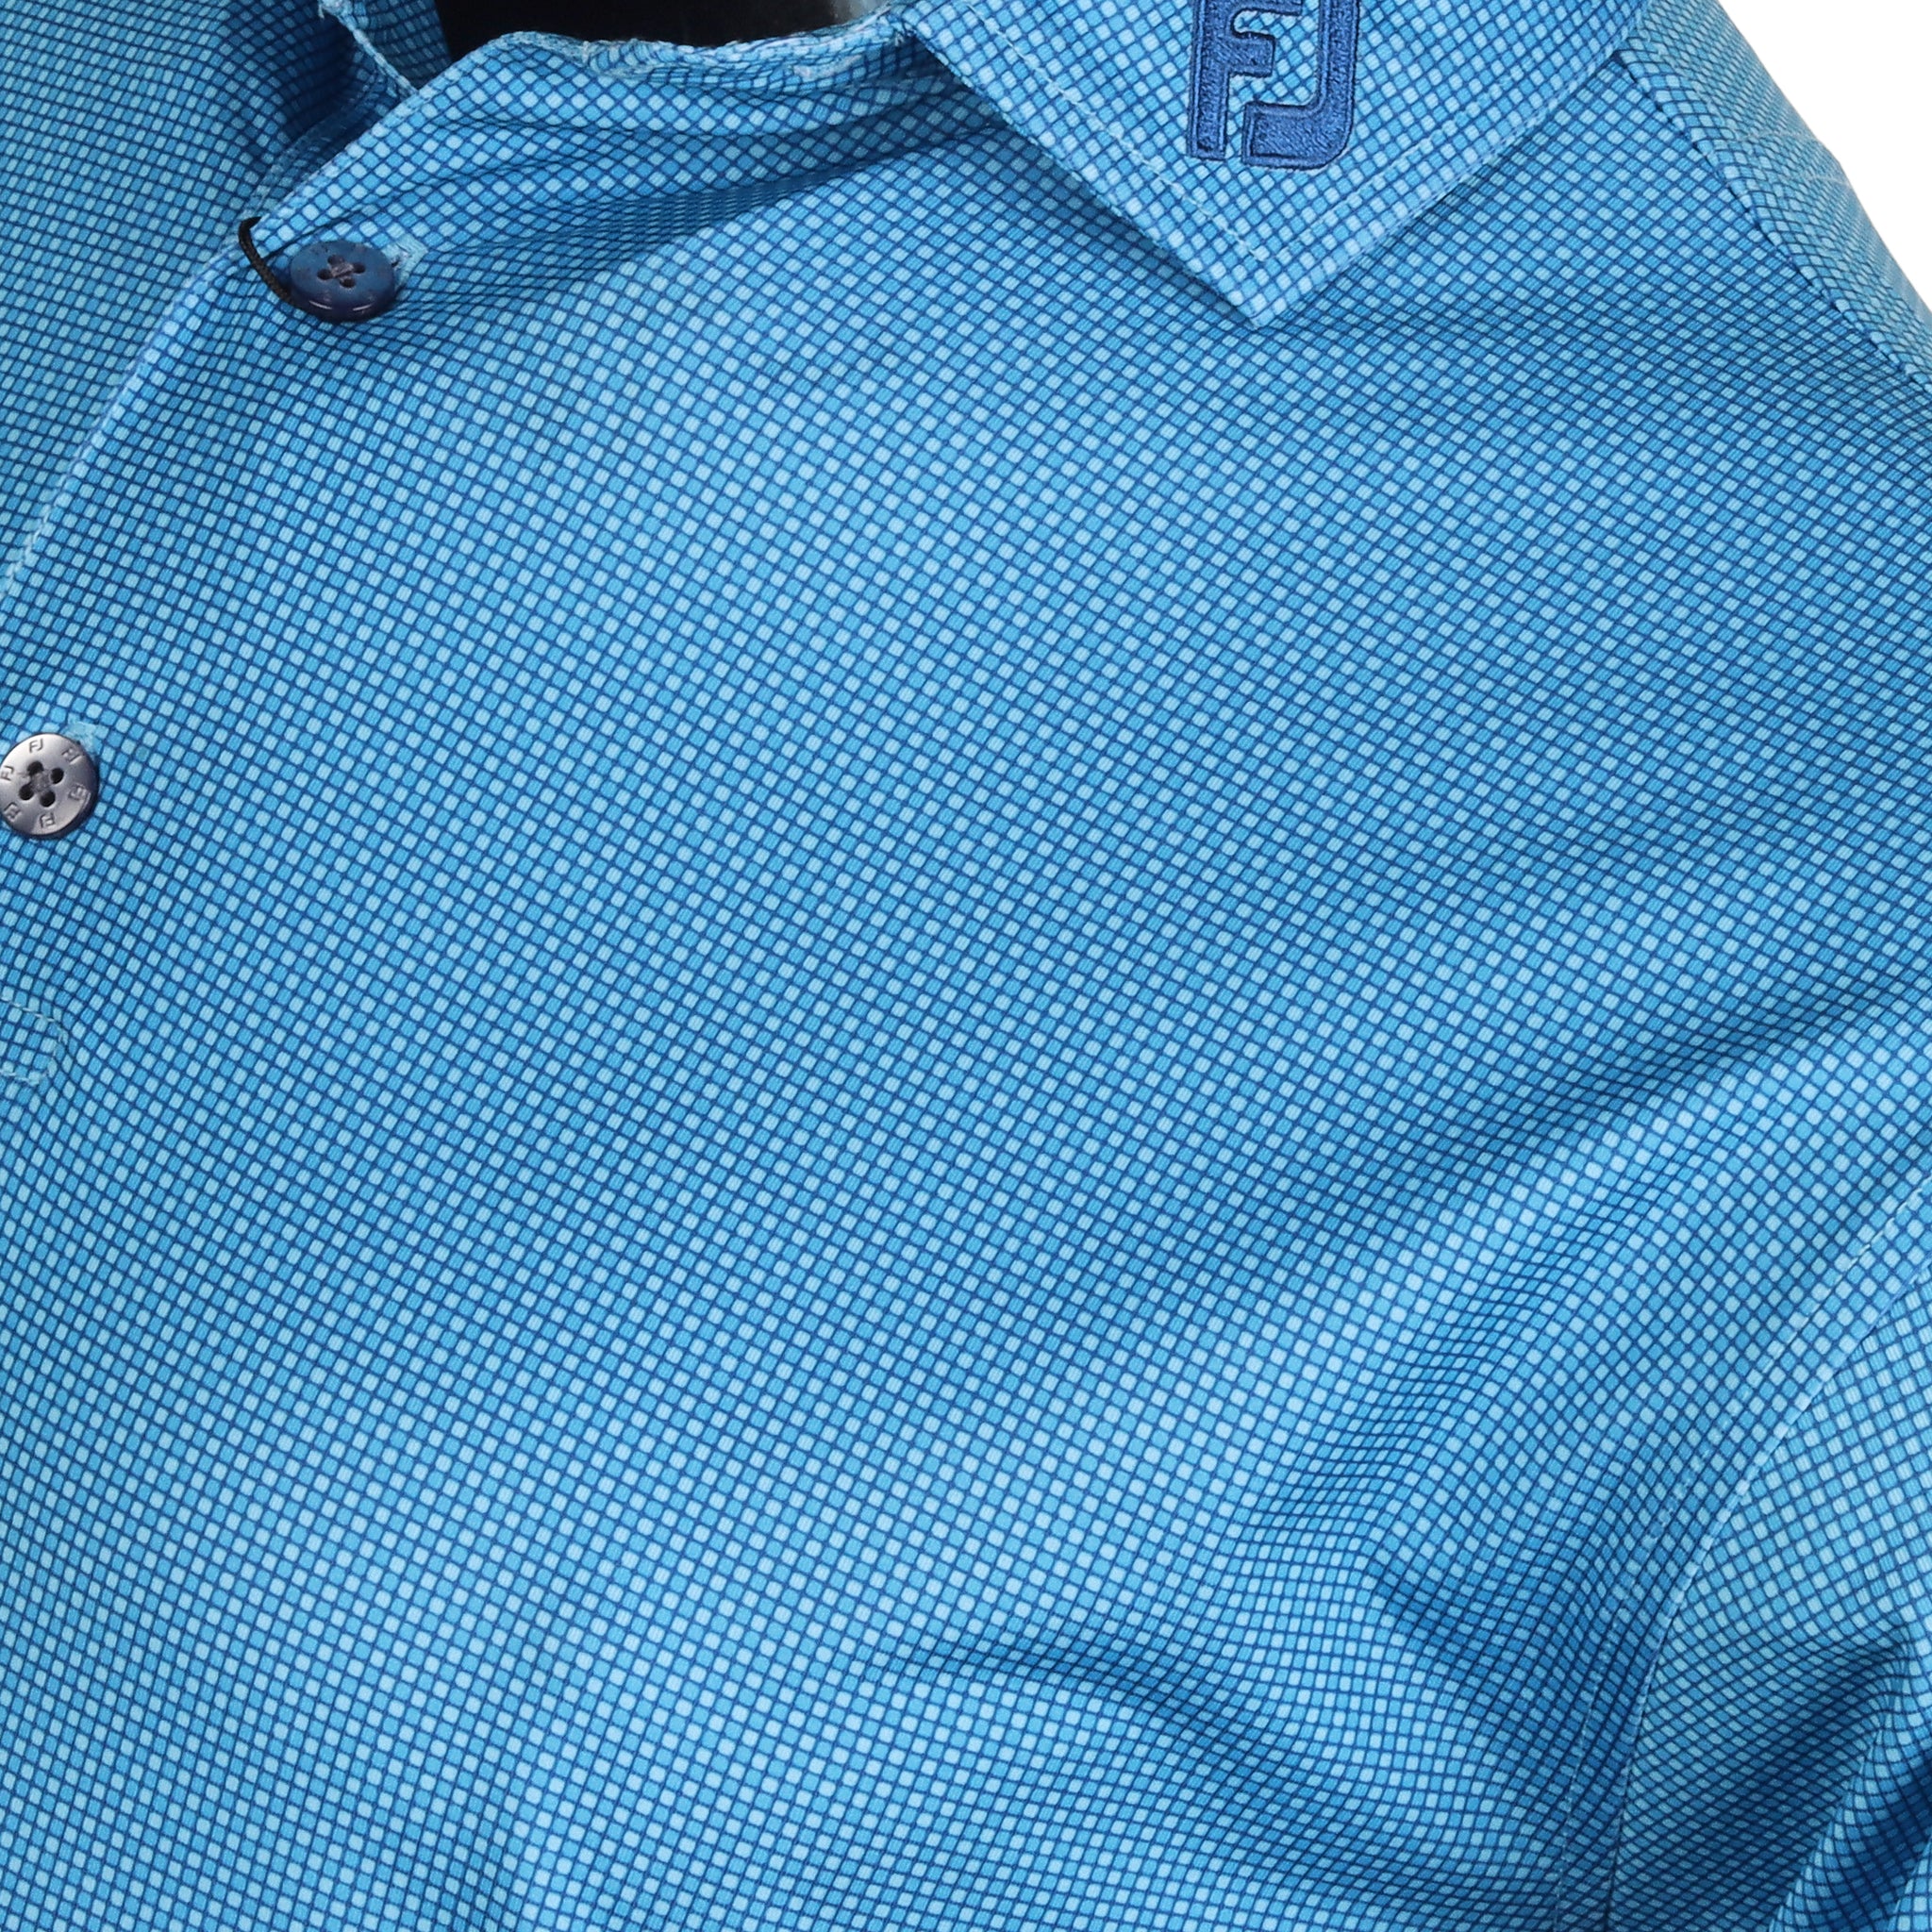 FootJoy Octagon Print Lisle Golf Shirt